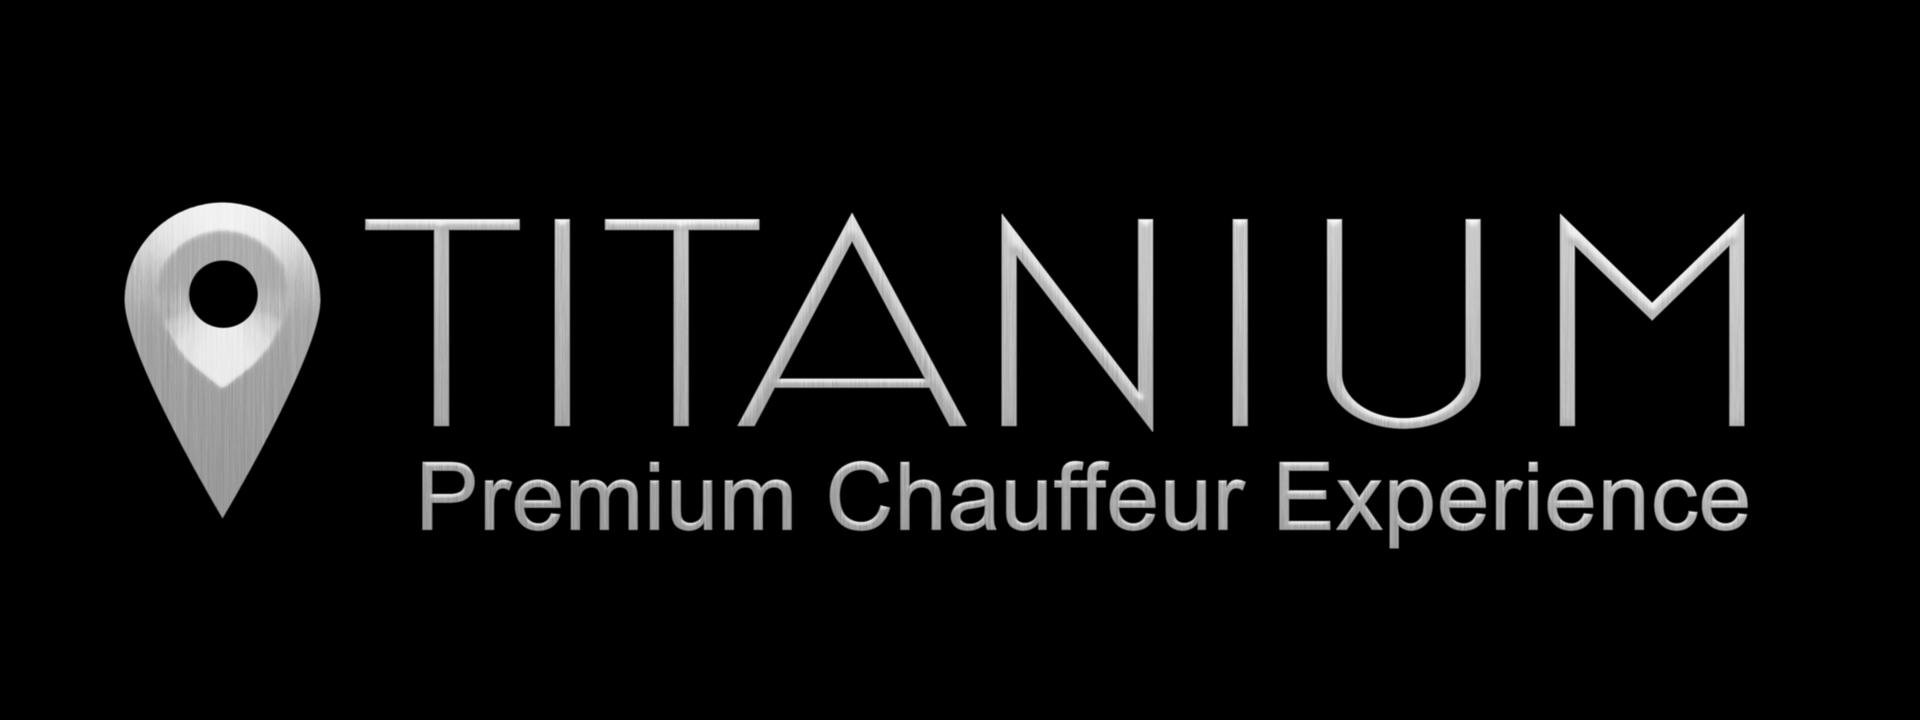 titanium-logo_black-square.jpg